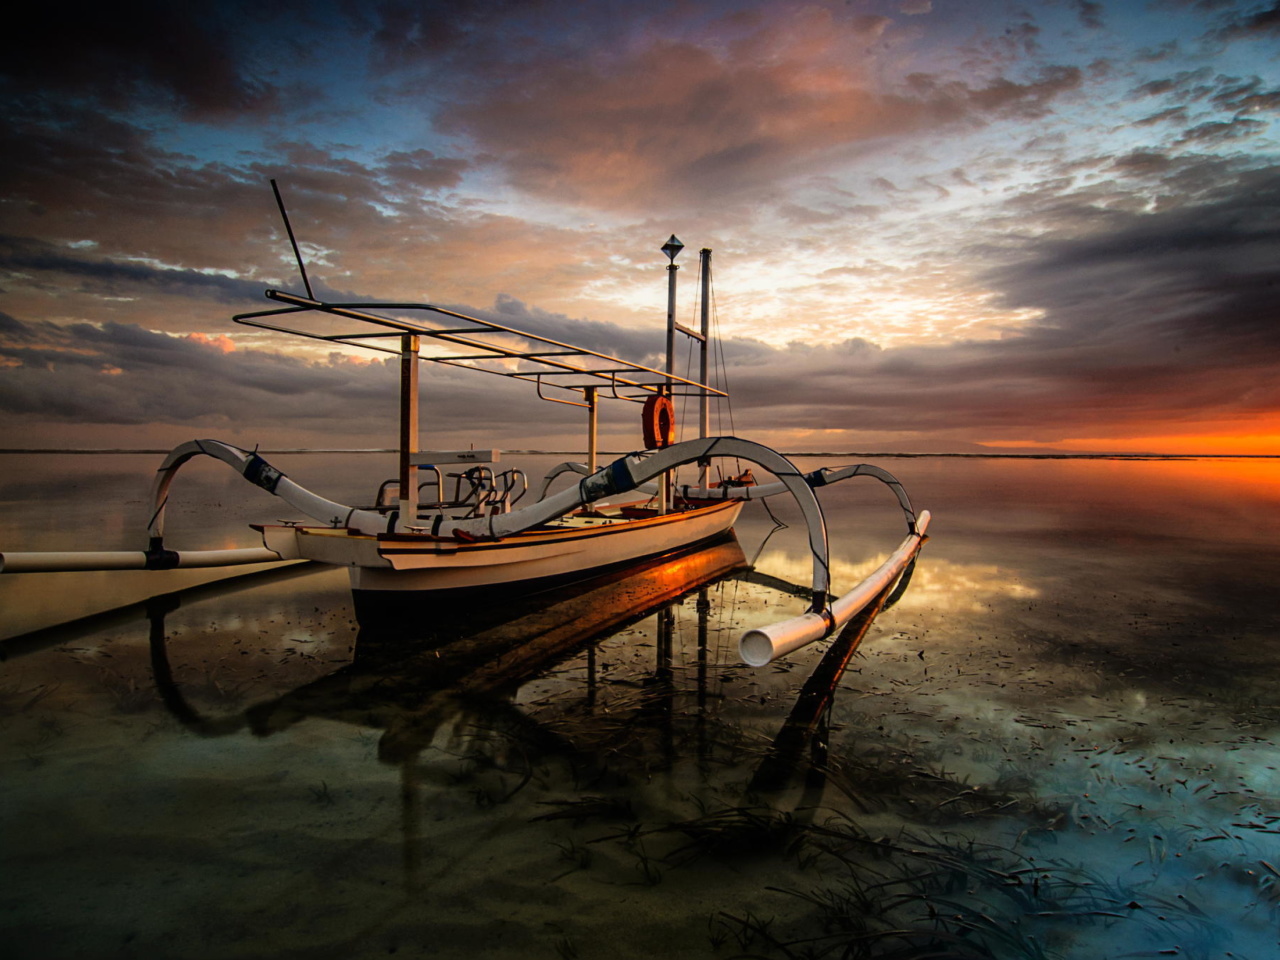 Sfondi Landscape with Boat in Ocean 1280x960